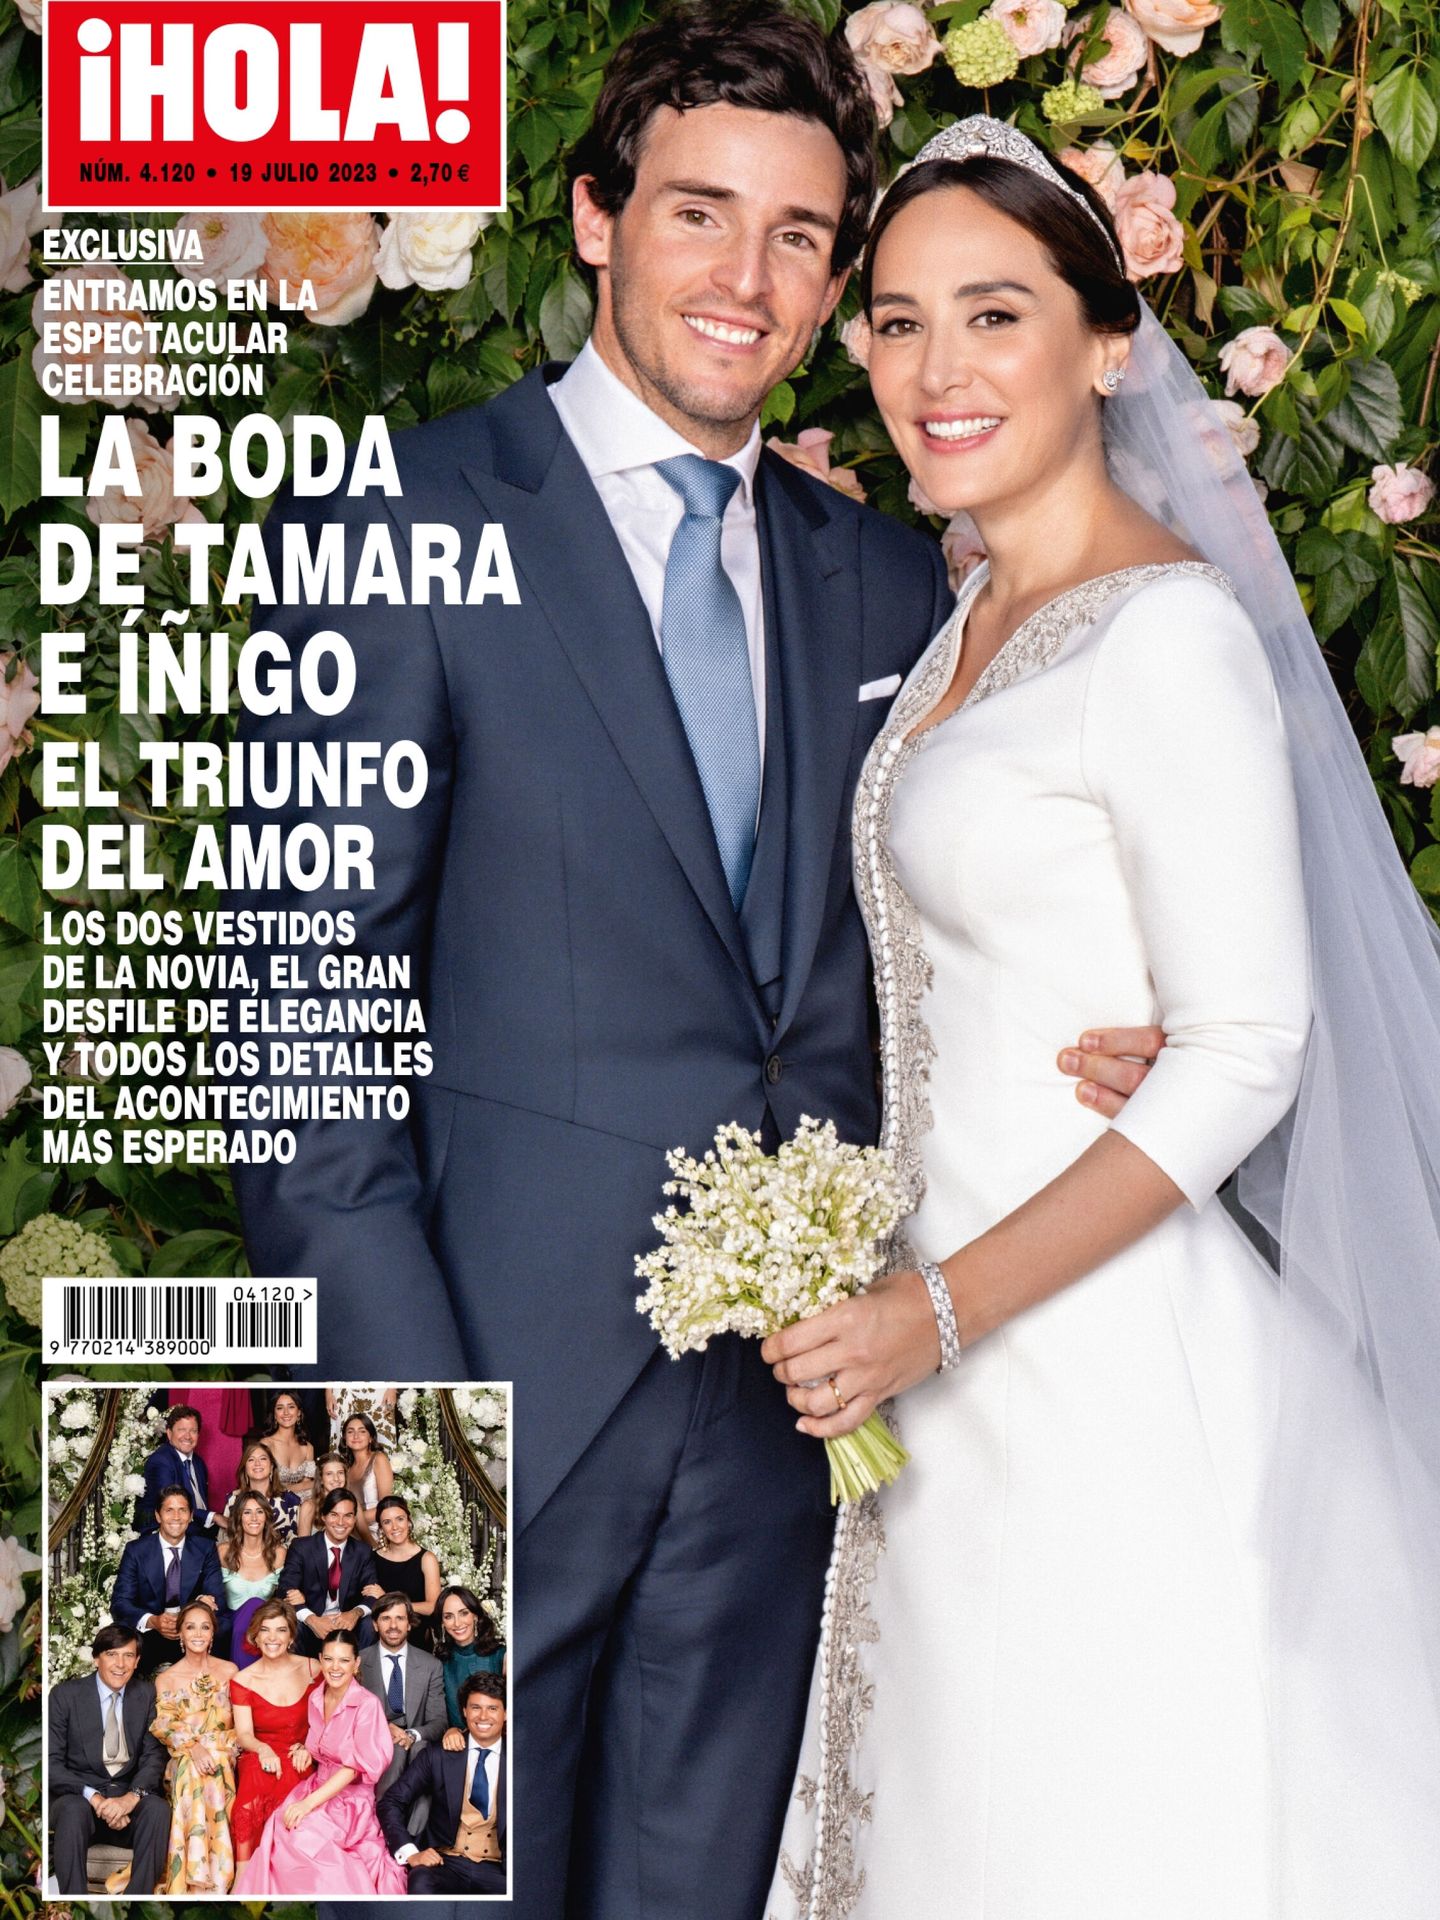 Detalle de la tiara de Tamara Falcó. (EFE/Revista ¡Hola!)